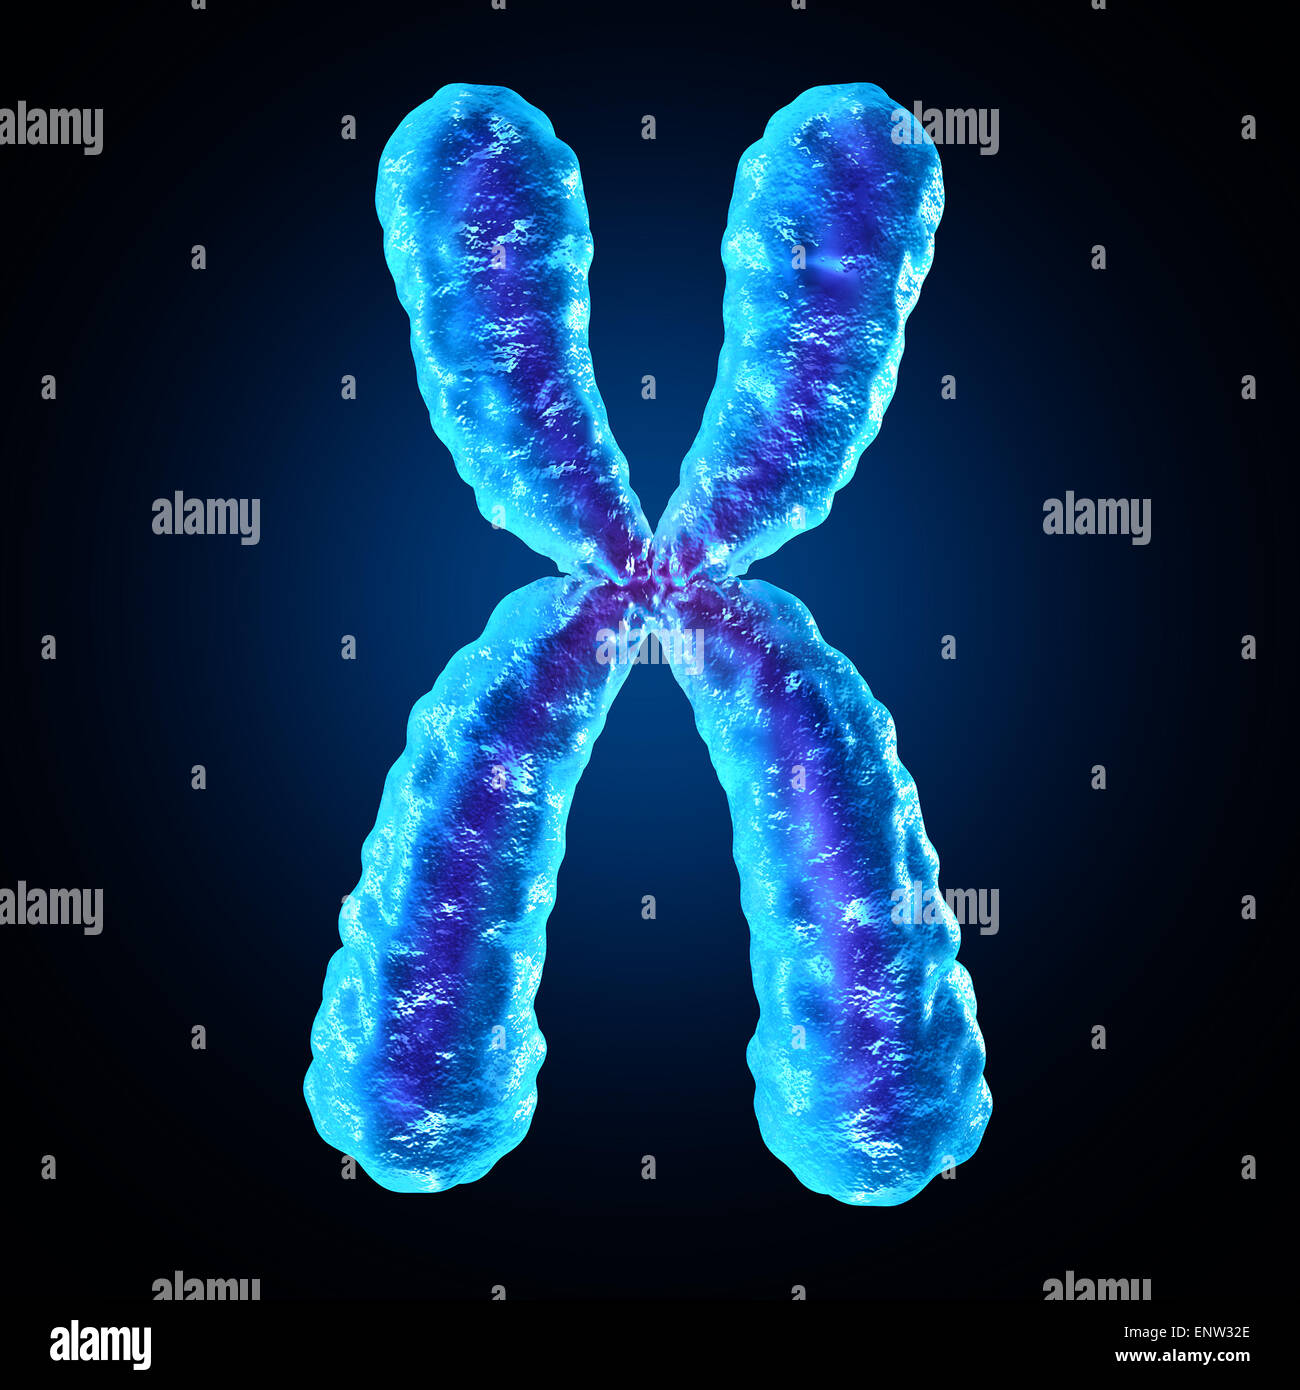 El cromosoma x de biología humana como una estructura que contiene la información genética del ADN como un símbolo de médicos para terapia génica o la microbiología de la investigación genética. Foto de stock